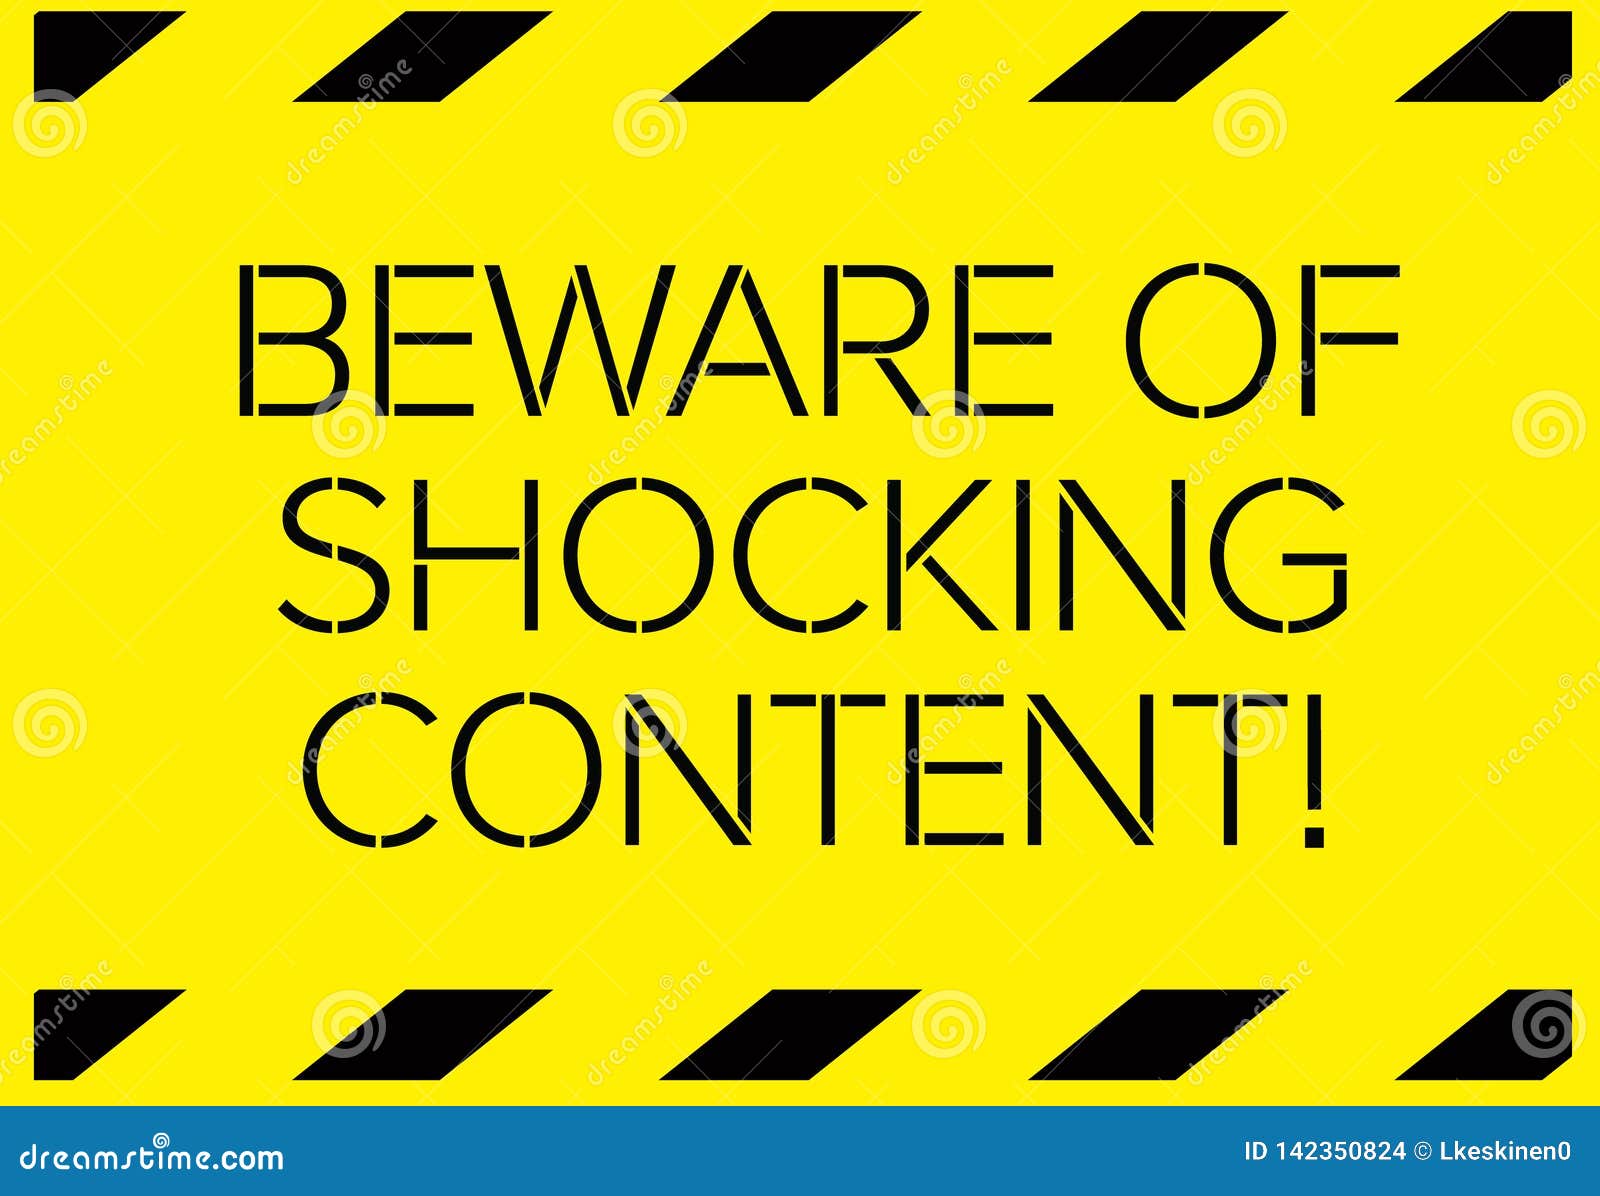 Content warning что это. Warning content. Caution! Shock content. ШОК-контент иллюстрация.